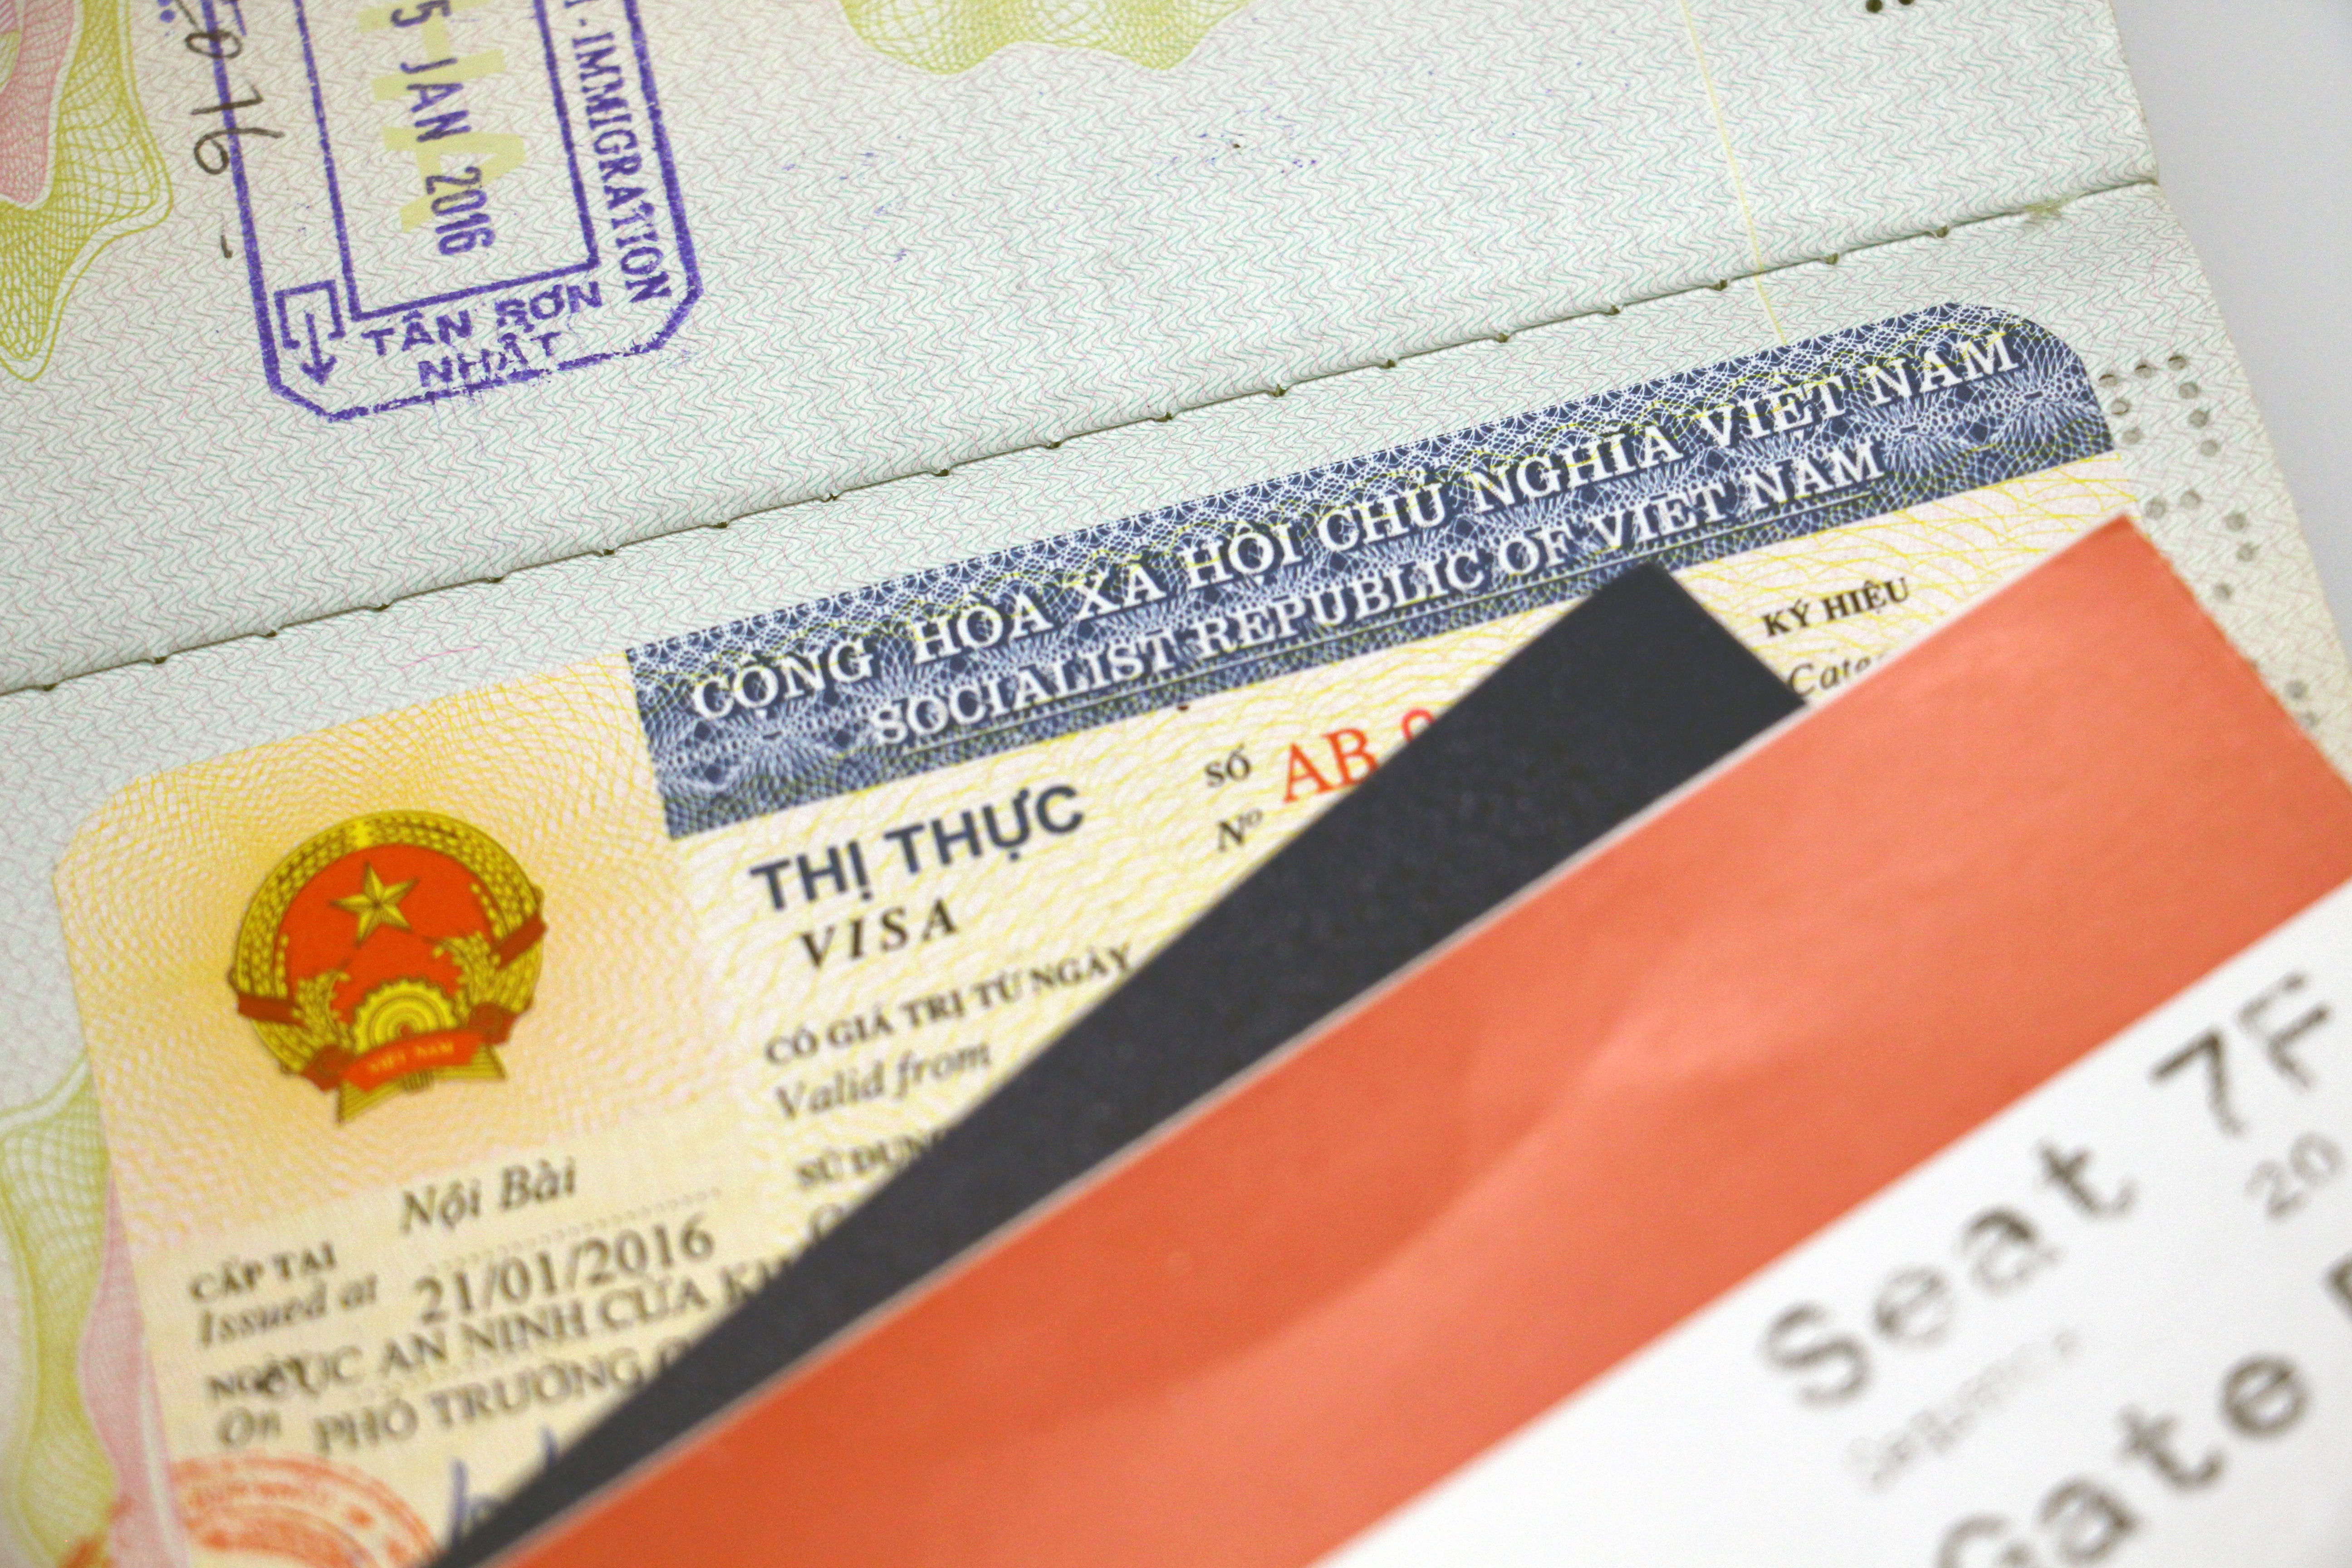 Vietnamese visa sticker-in passport